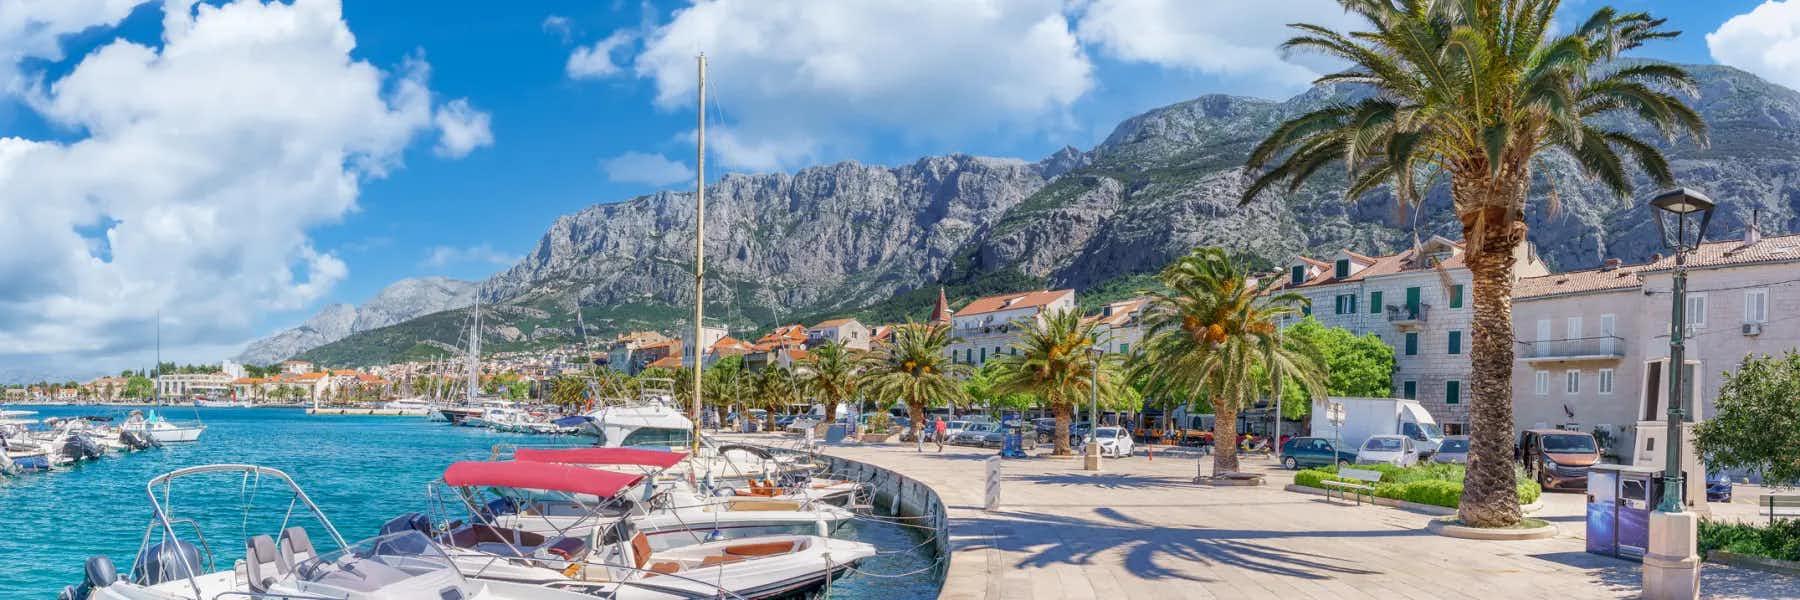 6 Things to do Along Croatia’s Makarska Riviera